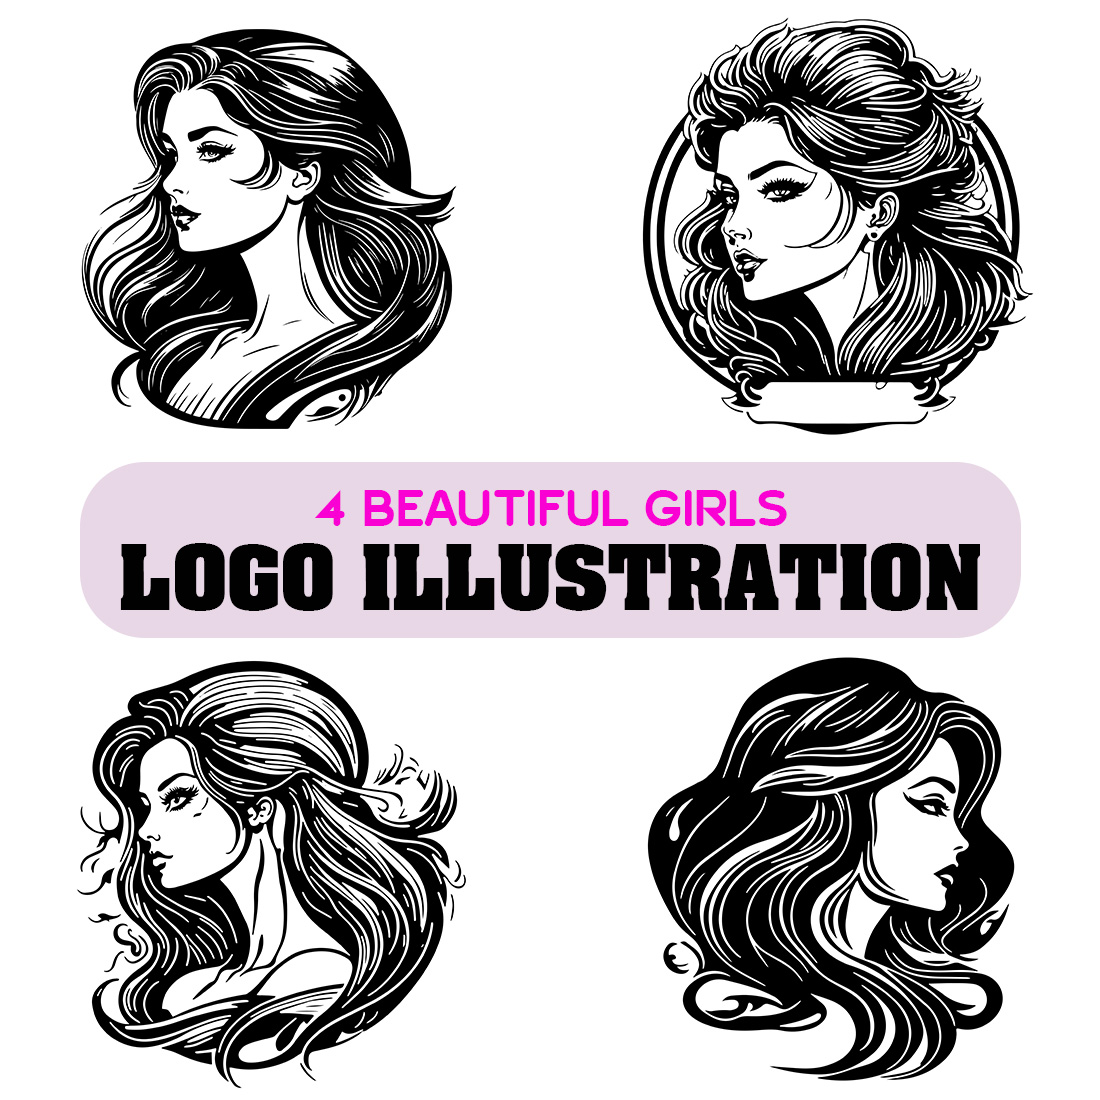 Beautiful Girls Logo illustration cover image.